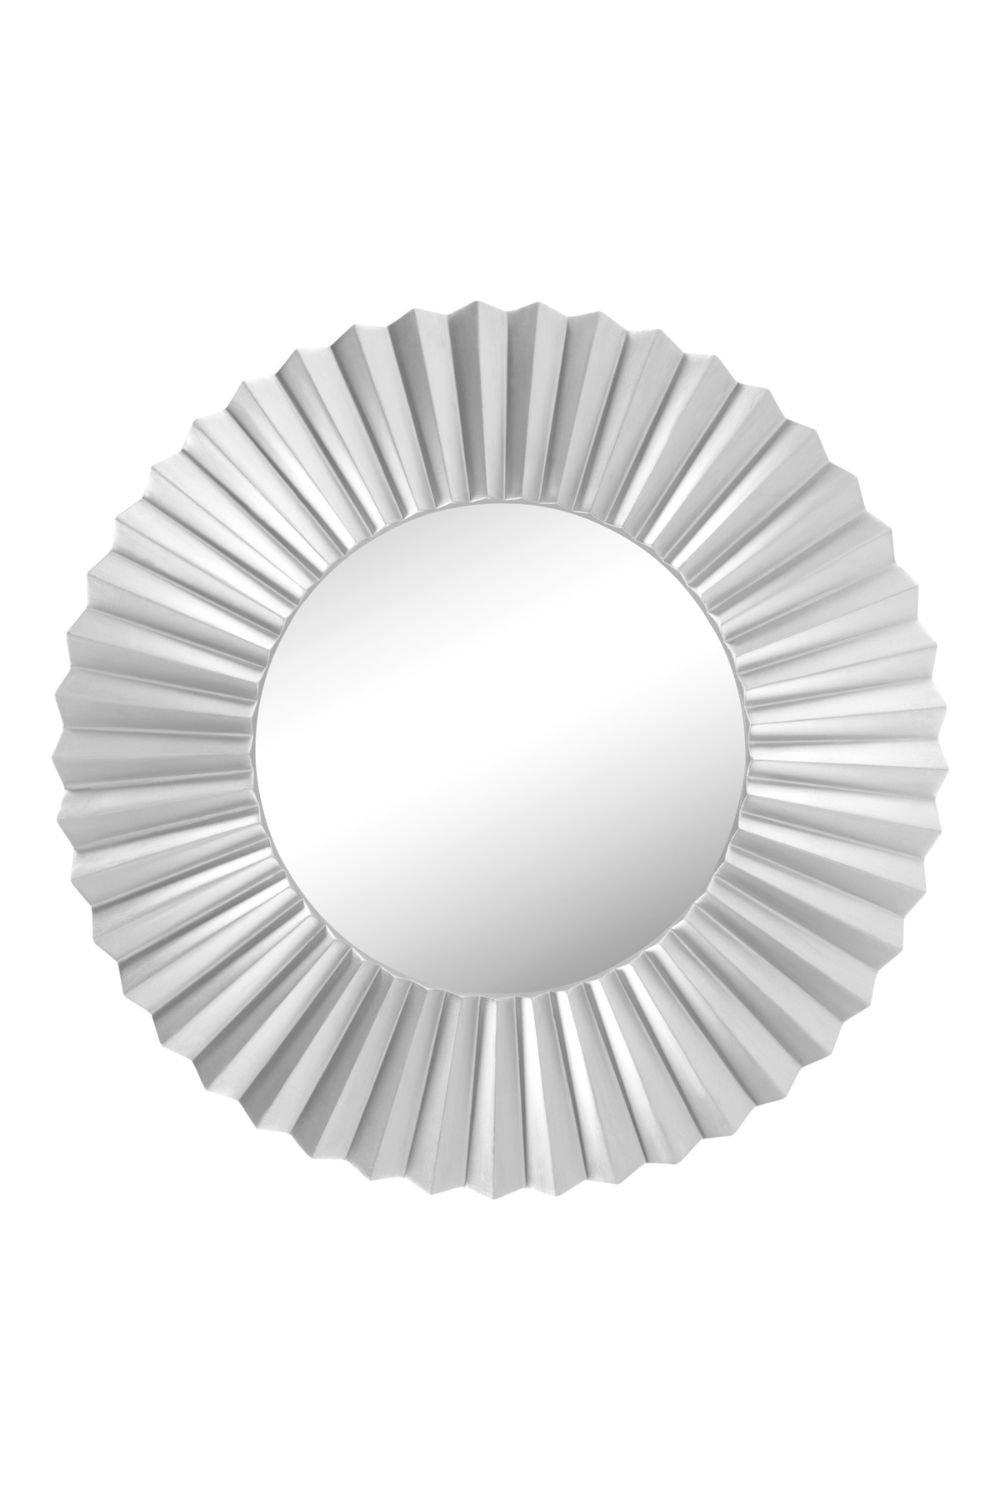 Sunburst Design Round Wall Mirror Silver 96cm